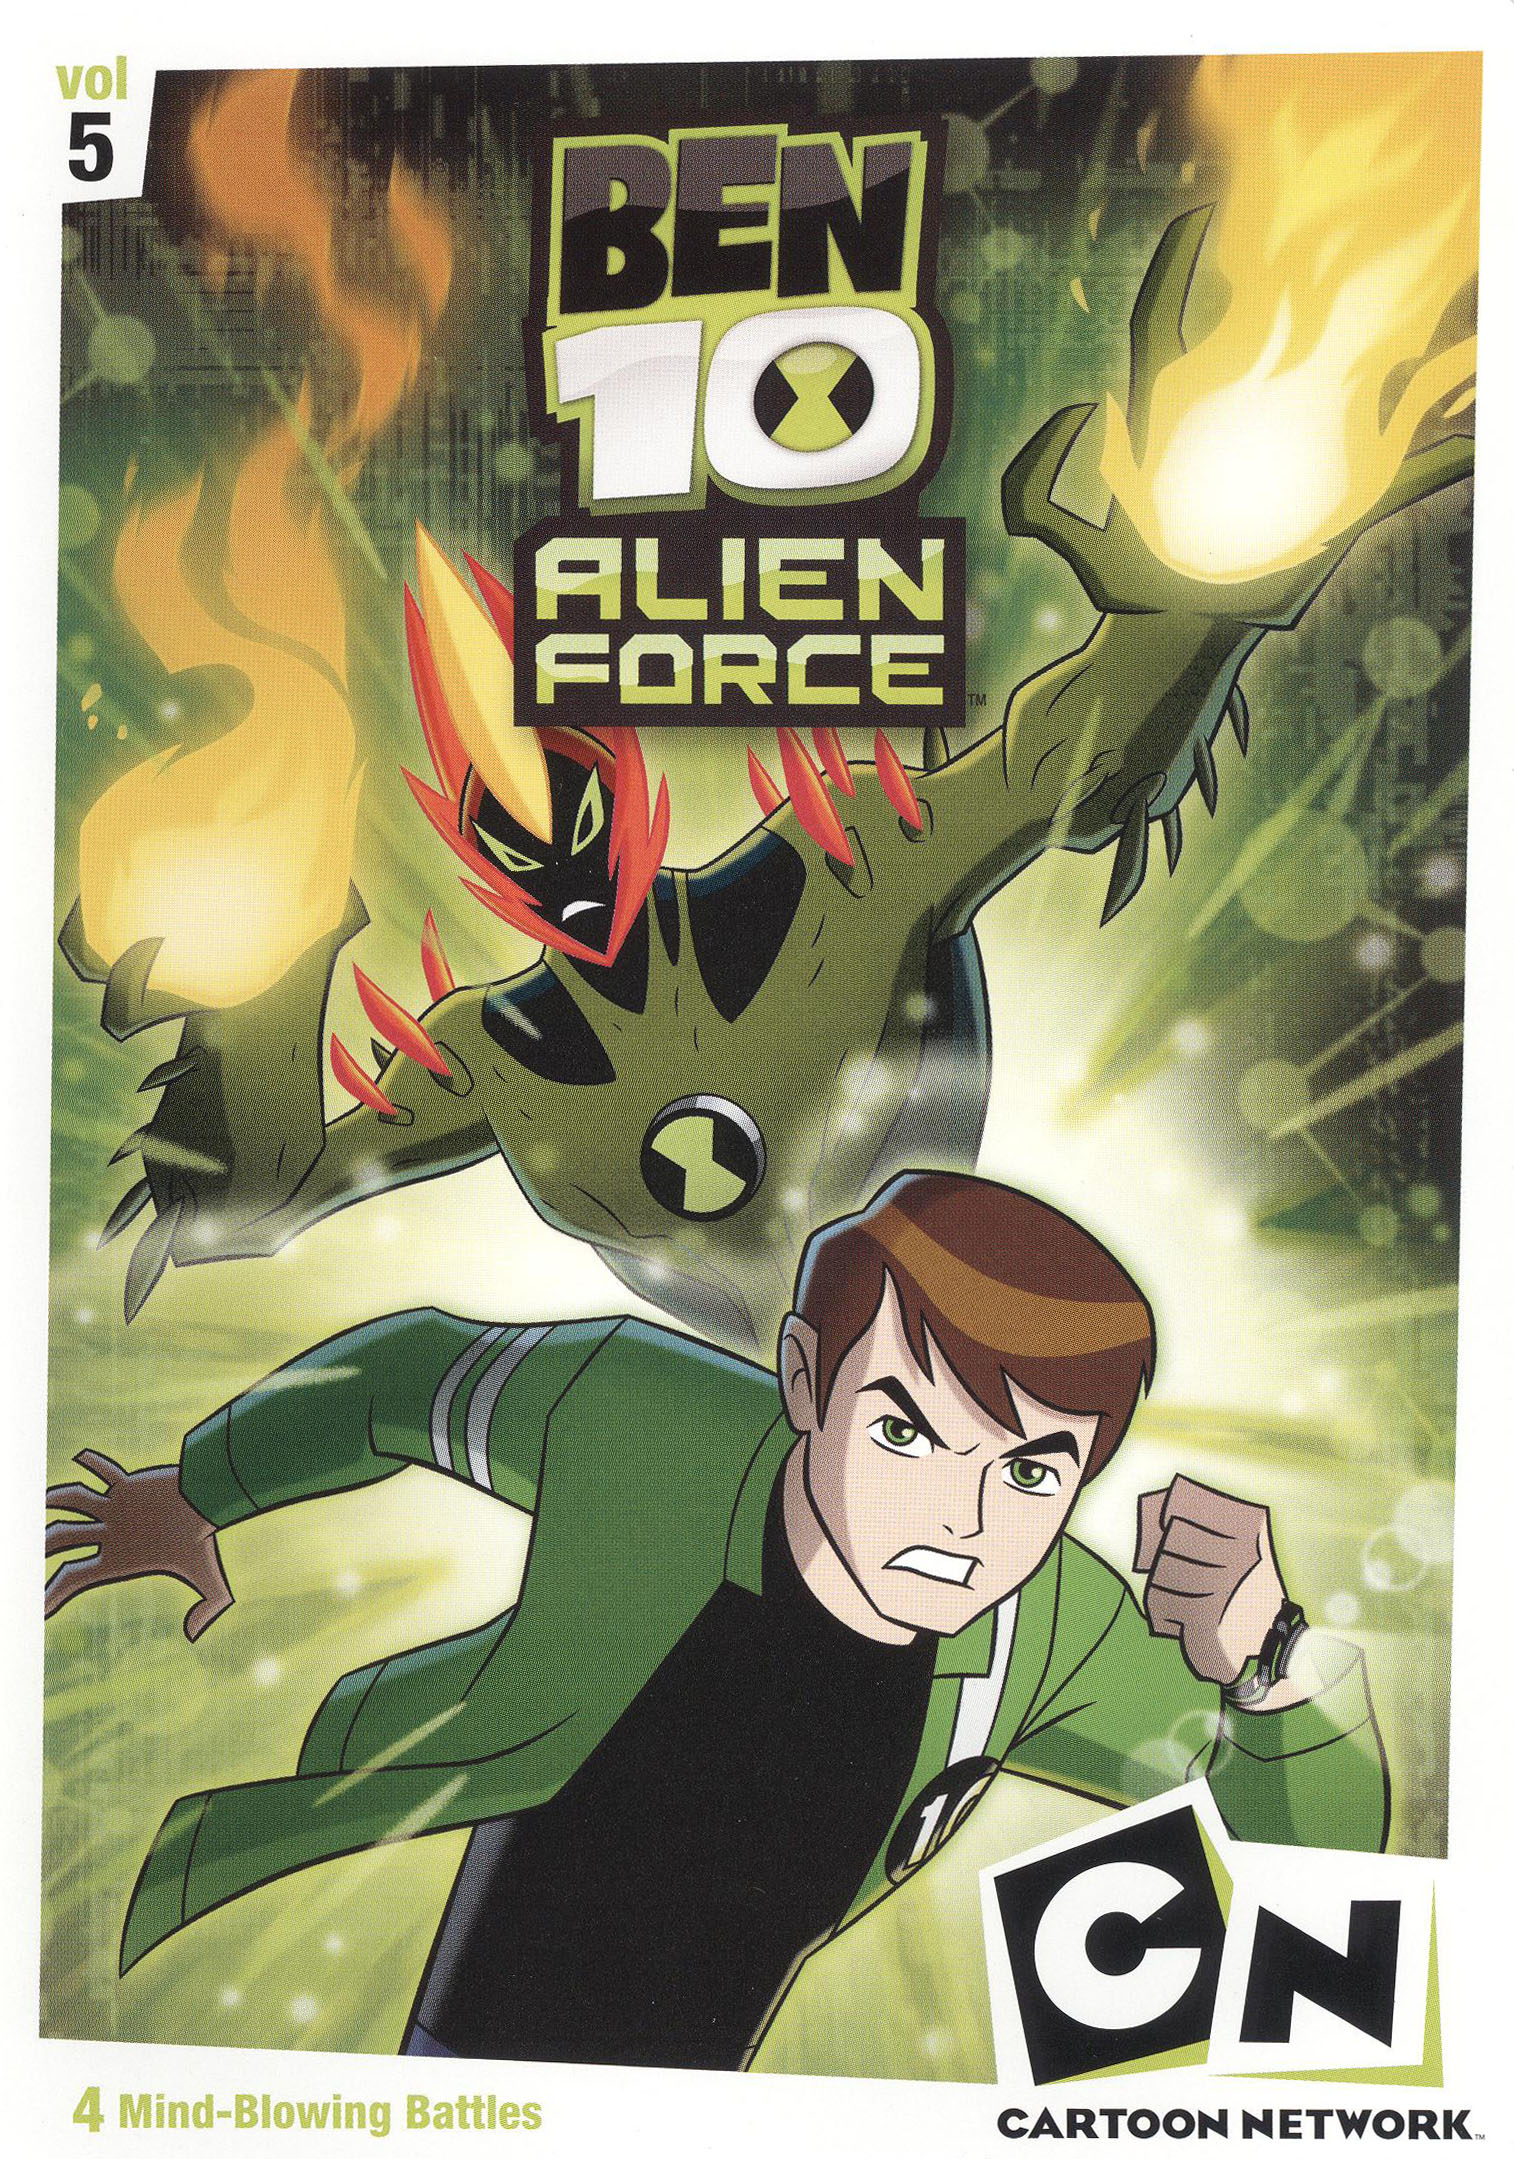  Ben 10 Alien Force-Vol. 7 [DVD] : Movies & TV